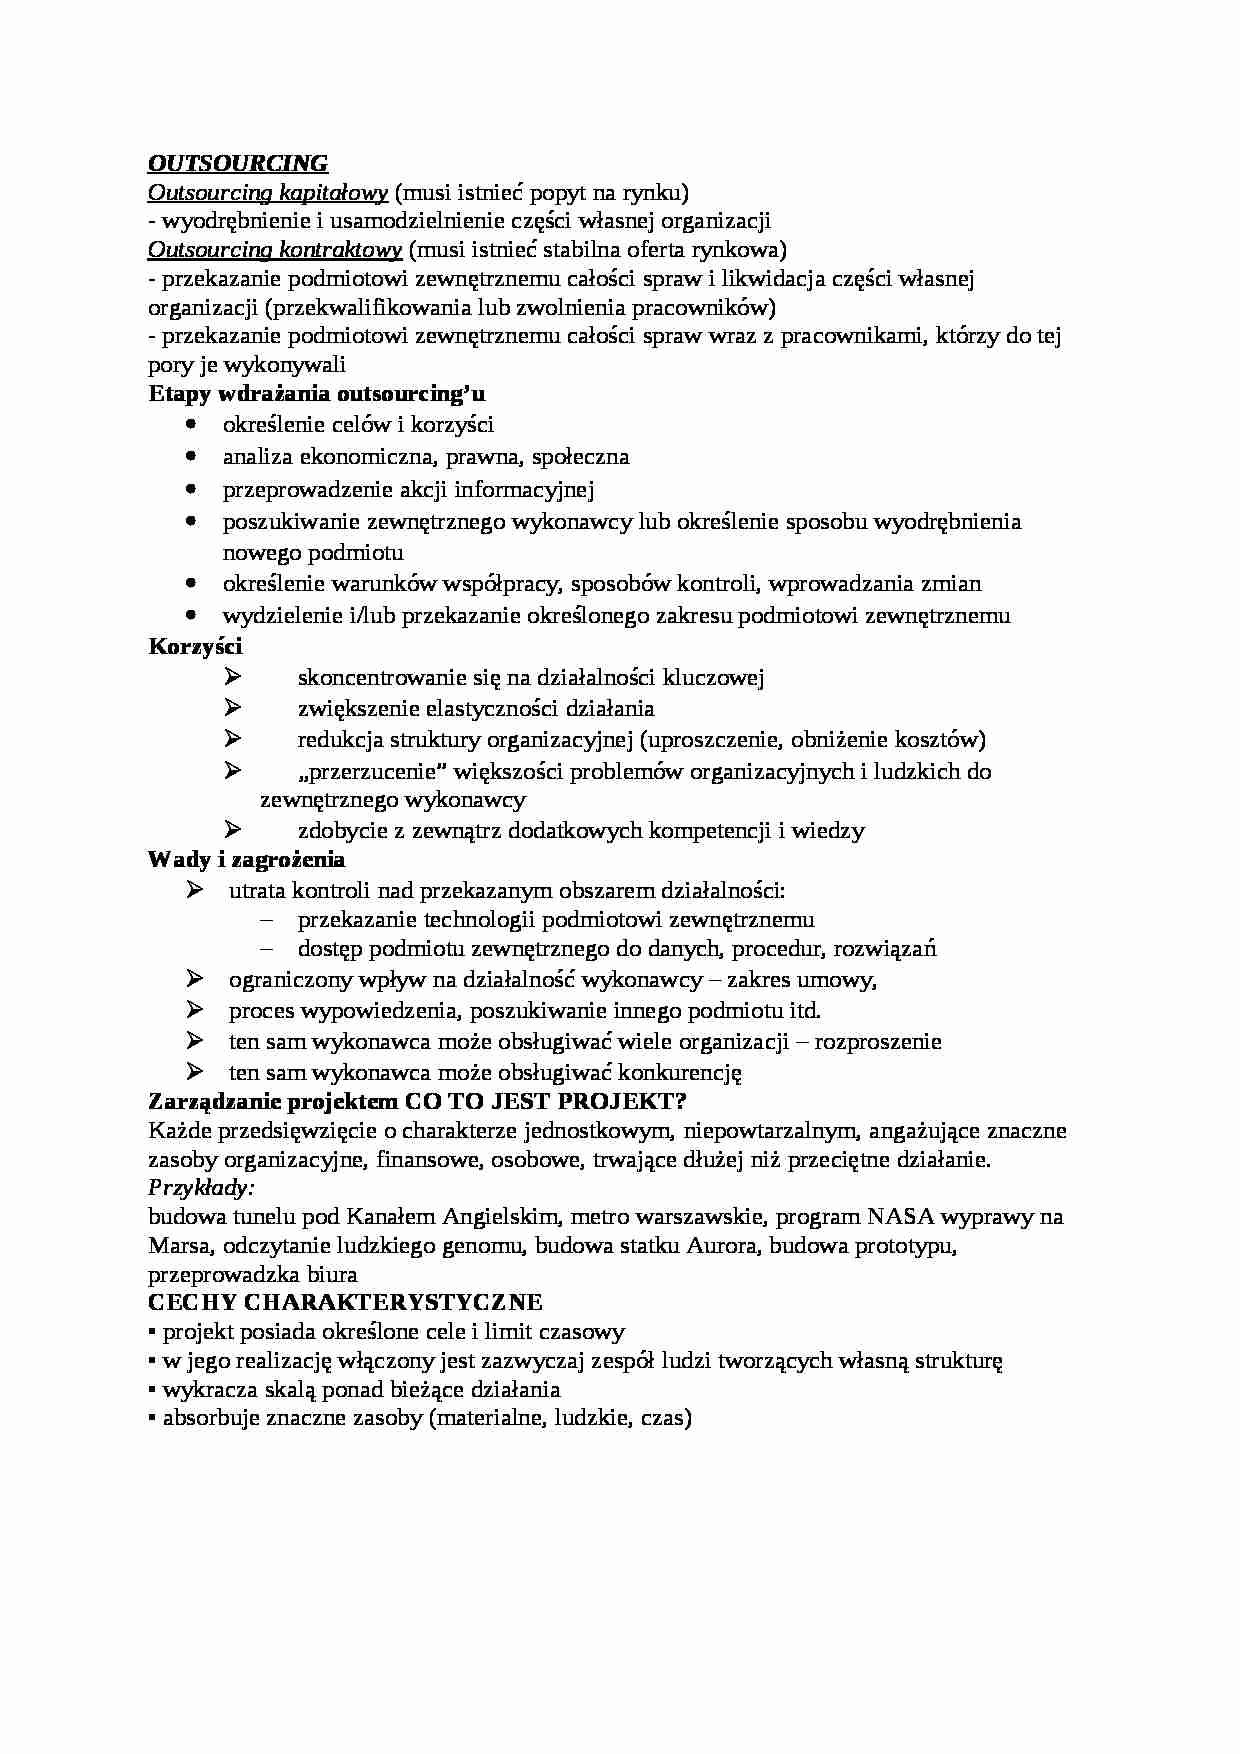 Outsourcing - omówienie - Struktura organizacyjna - strona 1